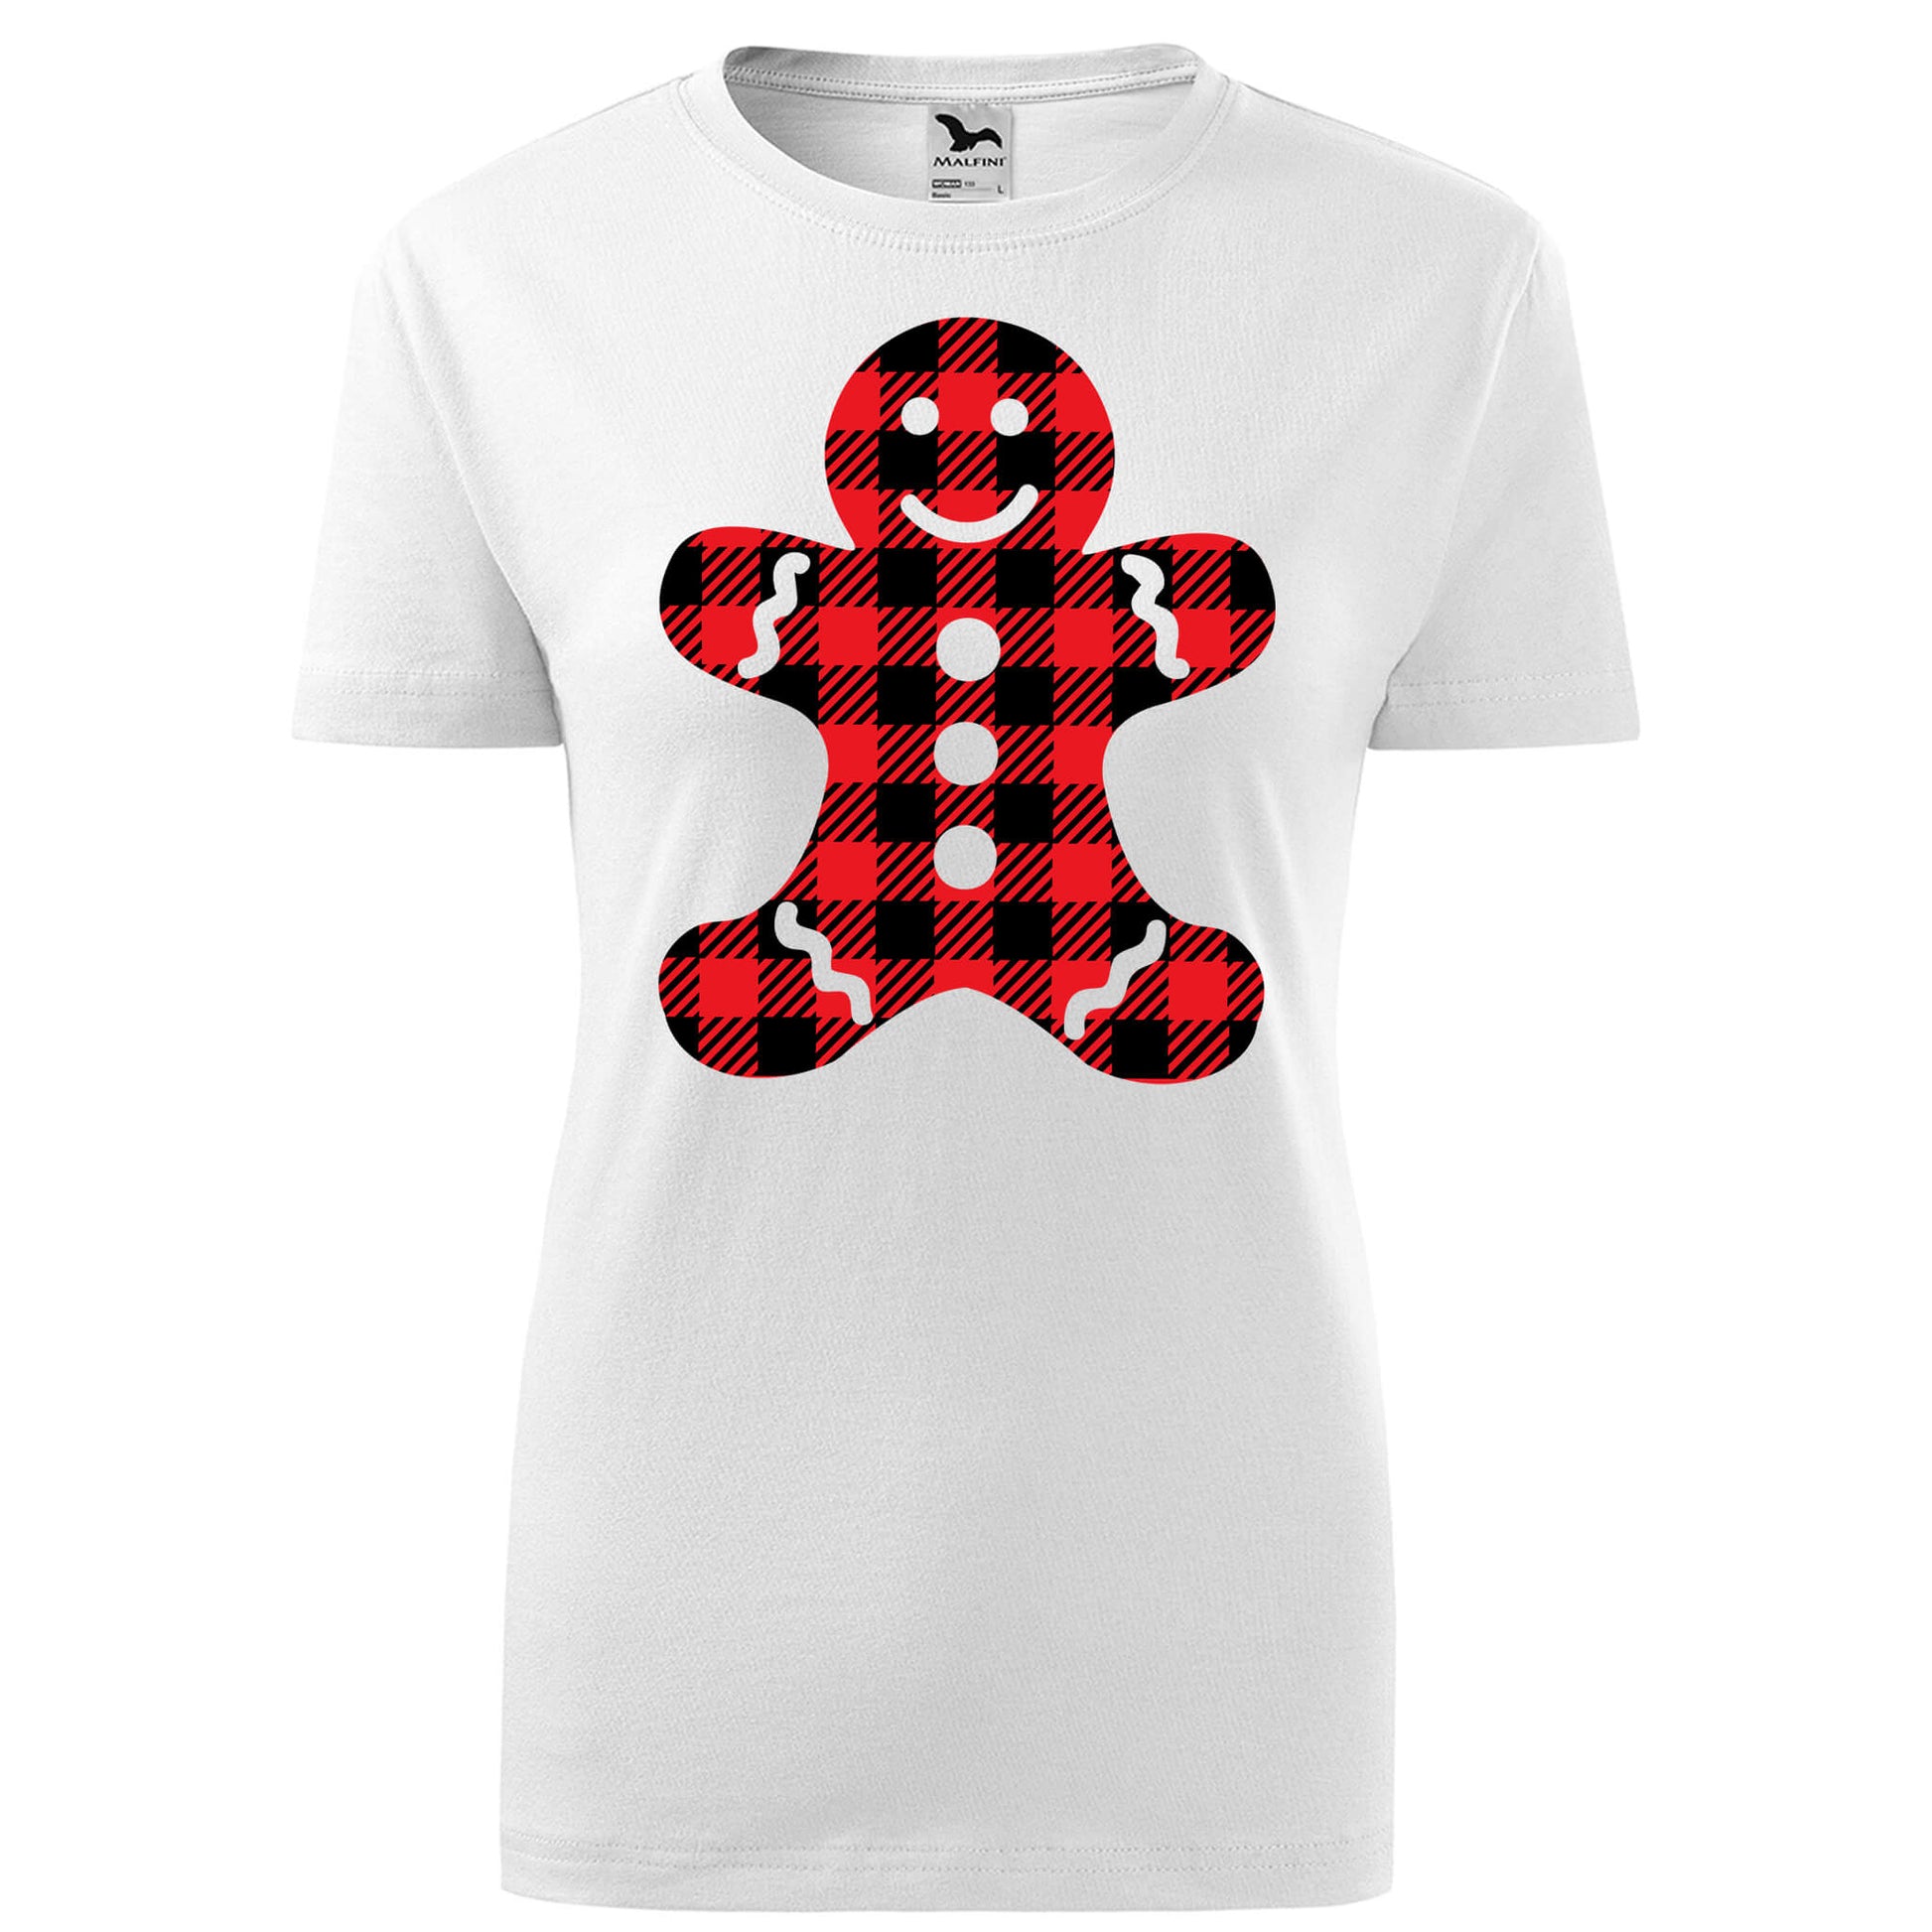 Buffalo gingerbread t-shirt - rvdesignprint